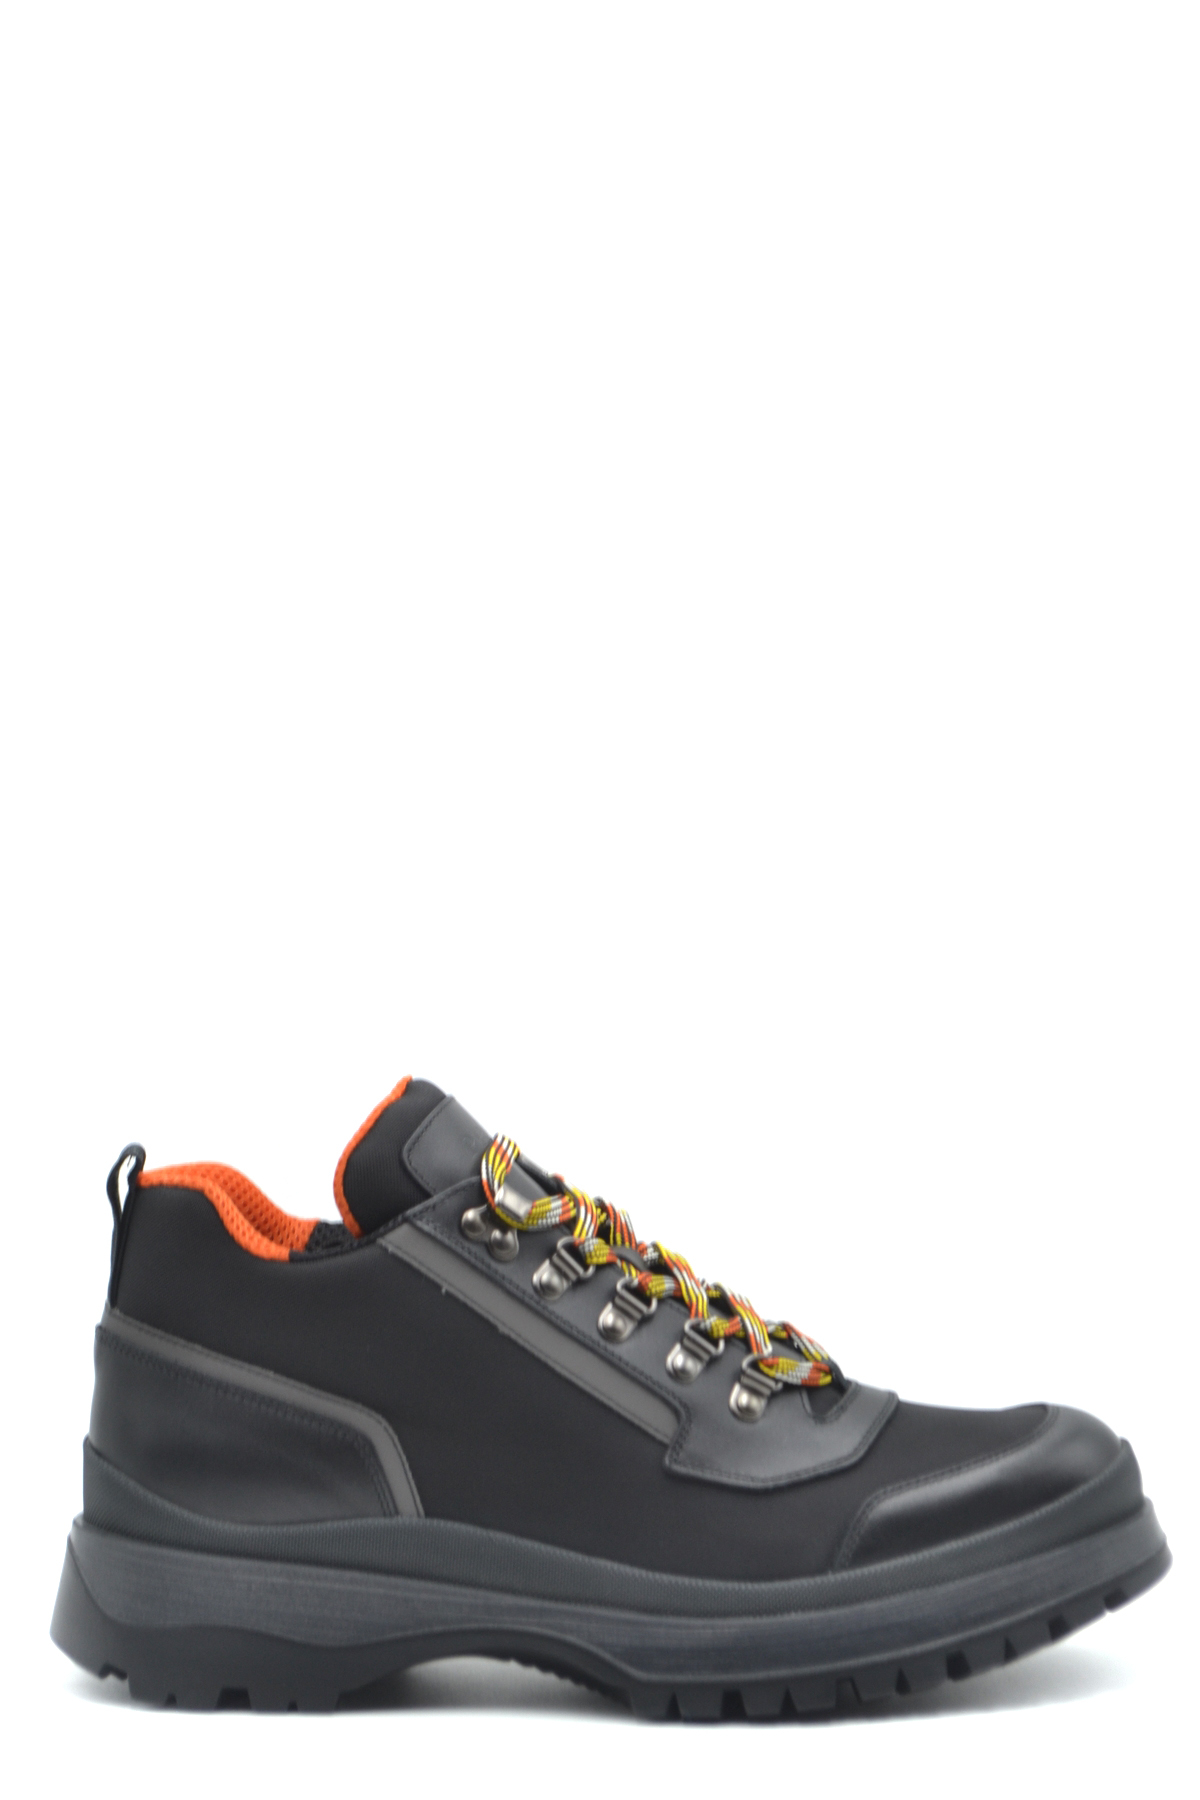 PRADA Men's Shoes Ankle Boots Black Leather NIB Authentic 41 EU 44 EU ...